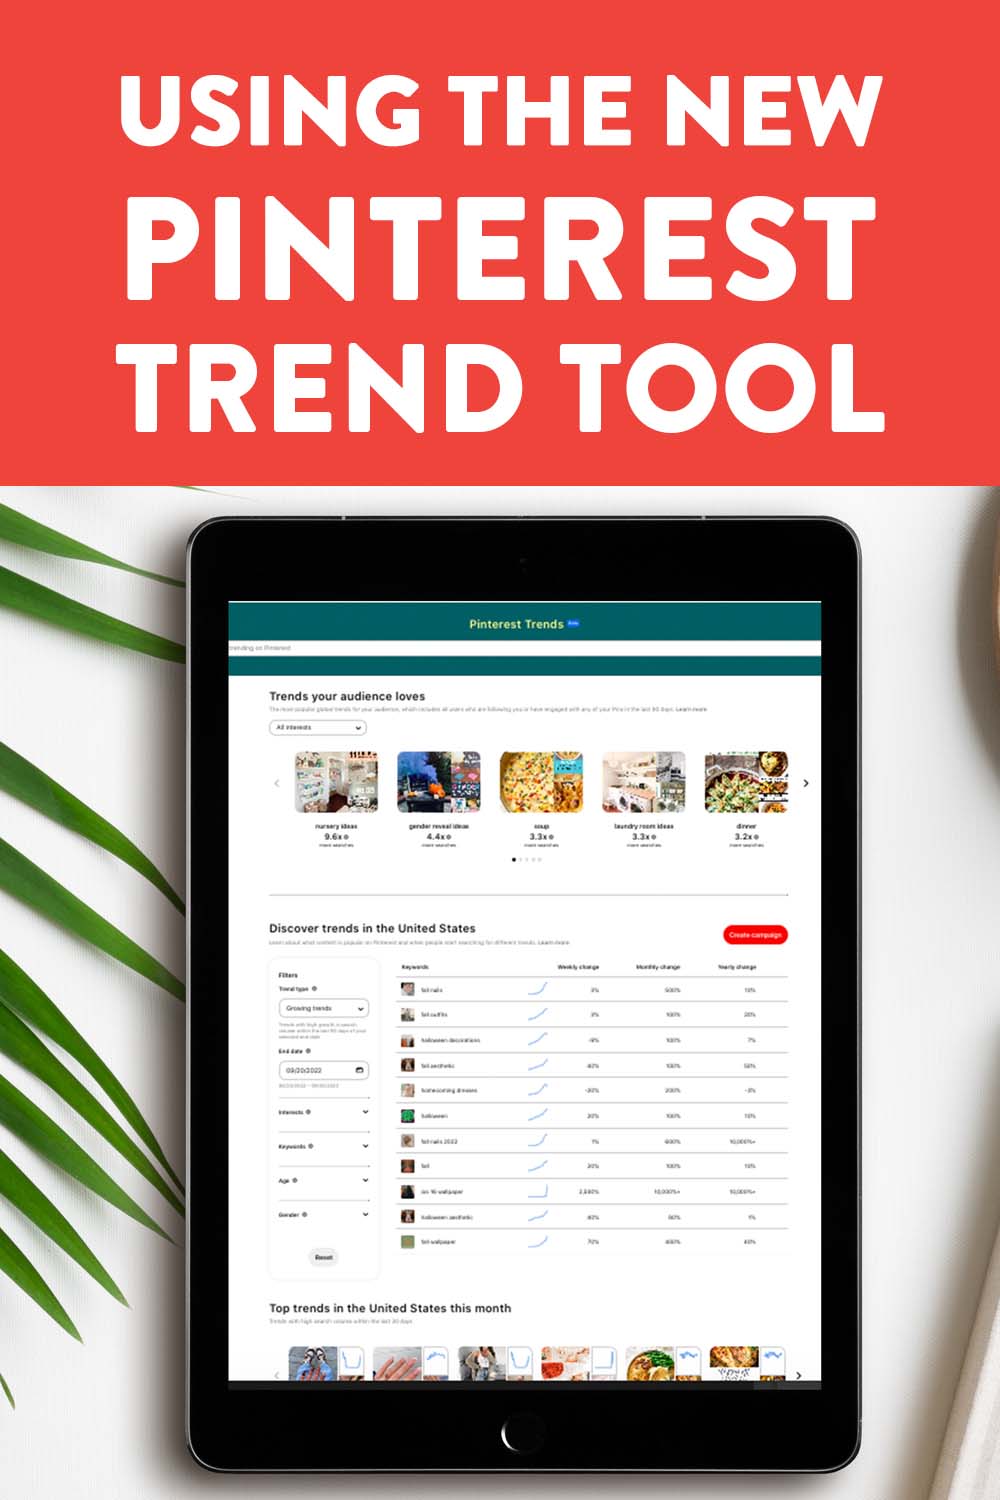 The Pinterest Trend Tool Just Got A Major Update